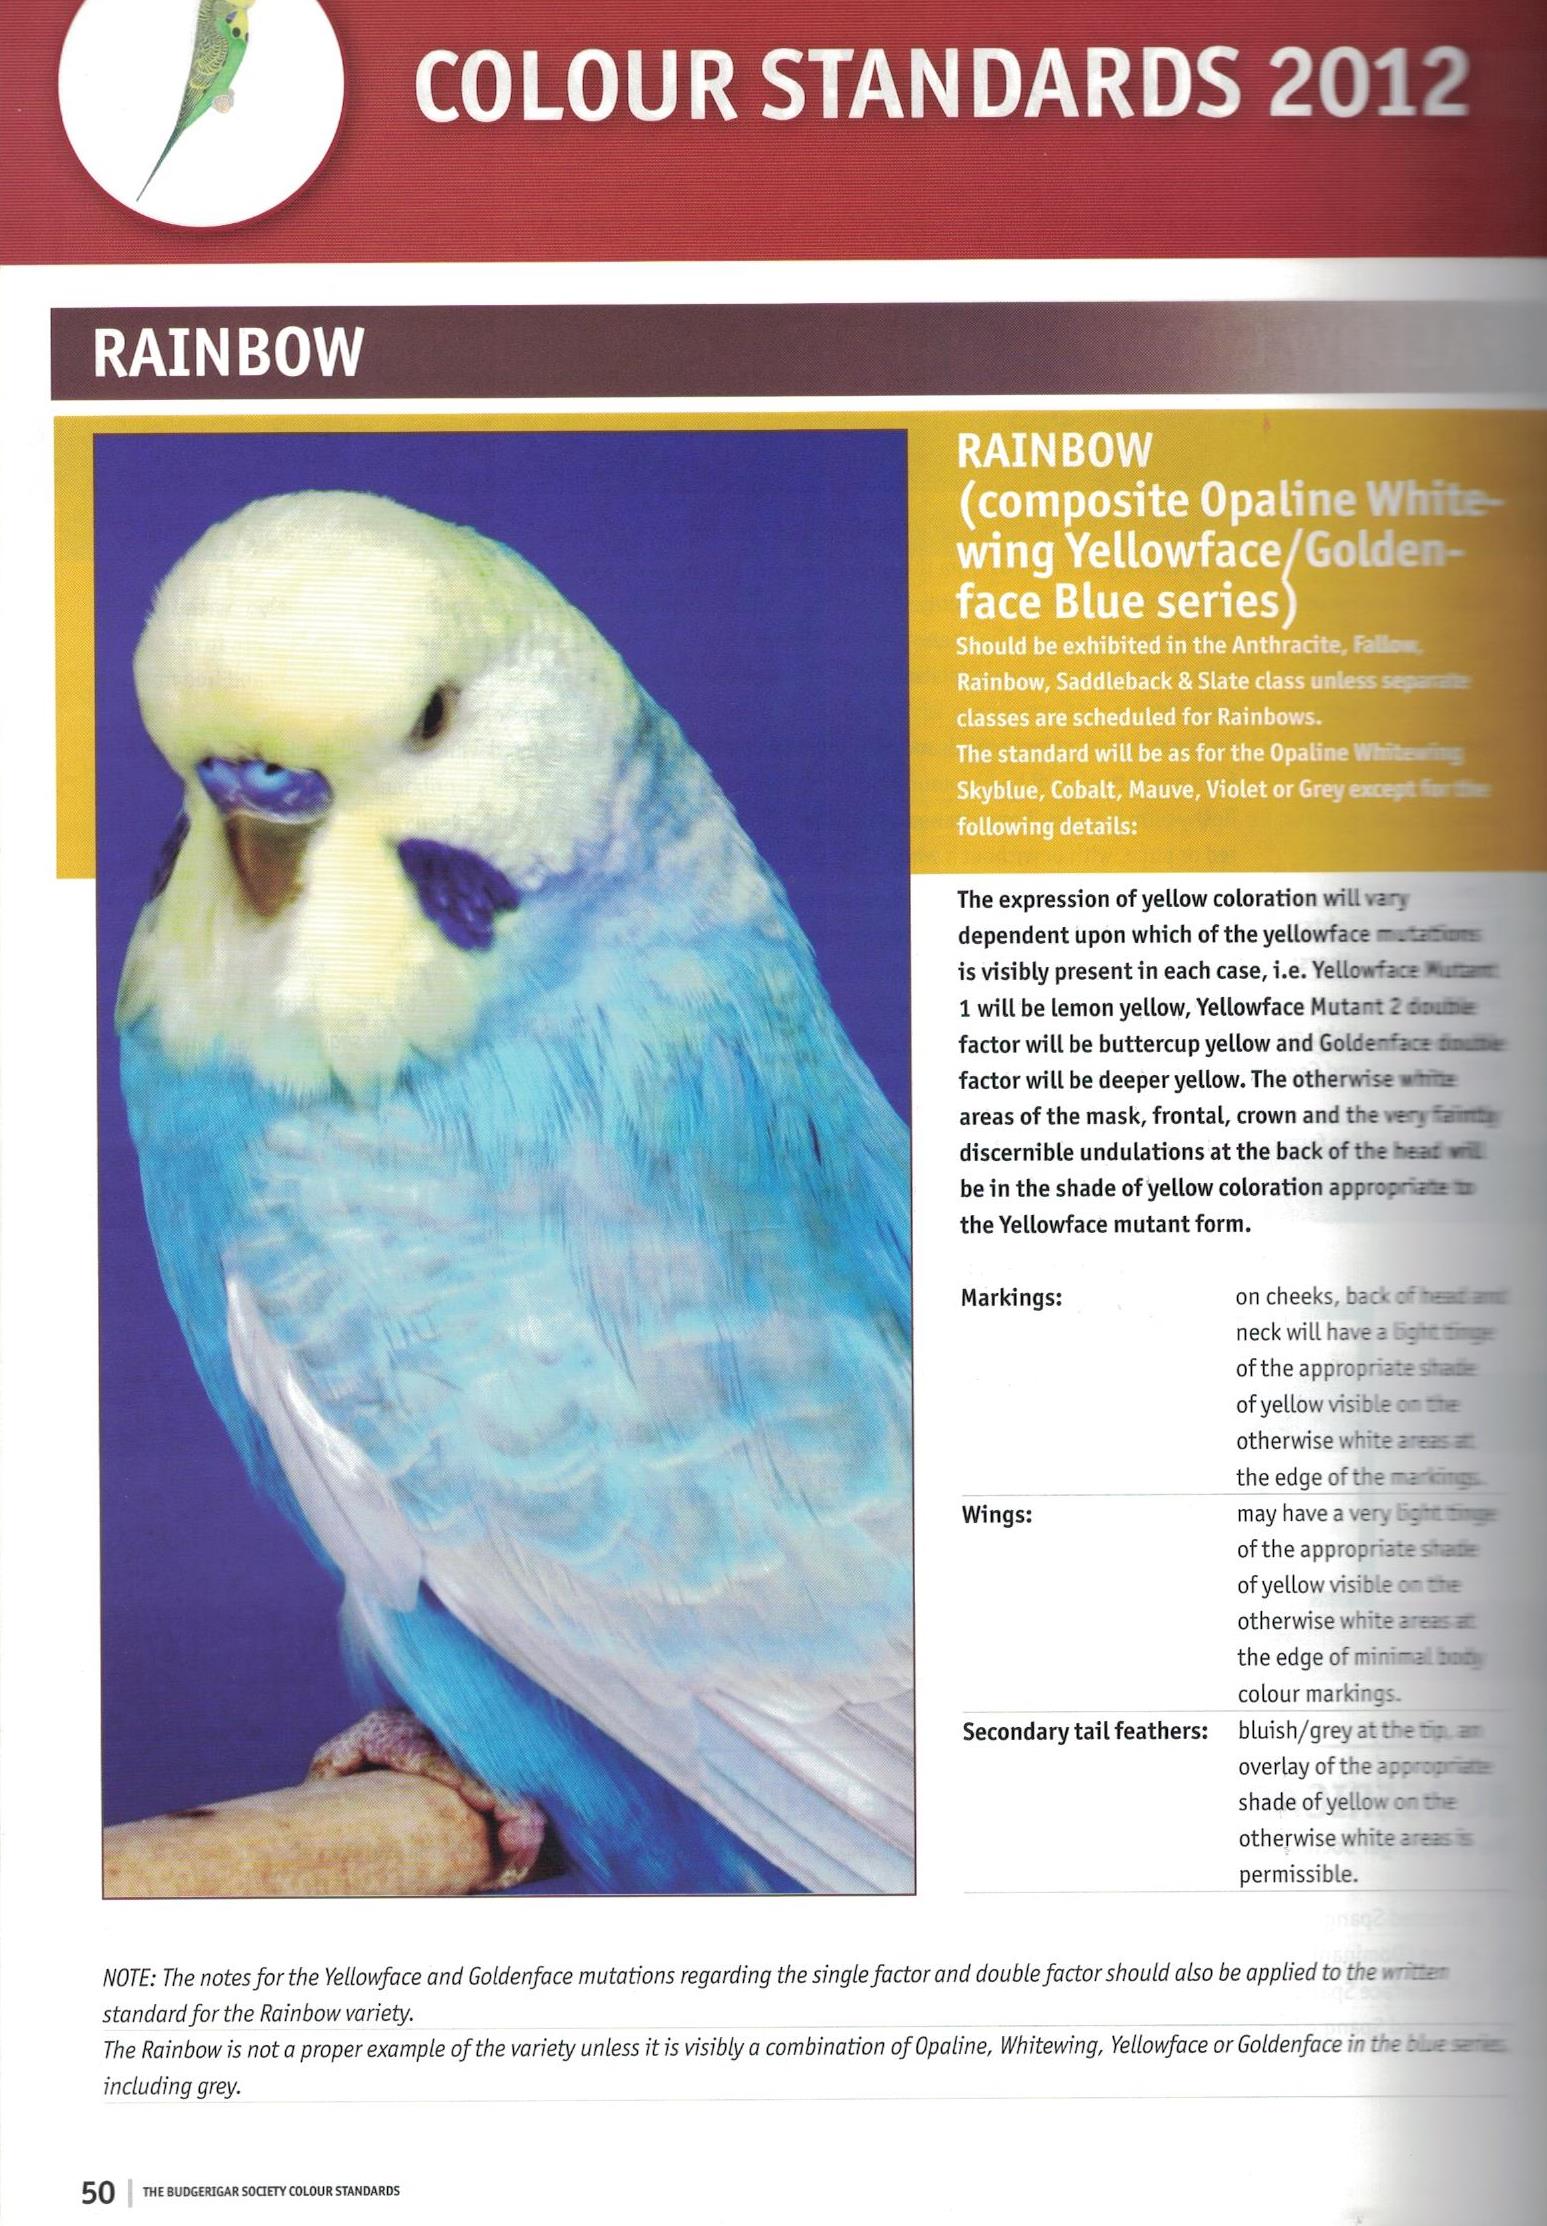 parakeet colors varieties